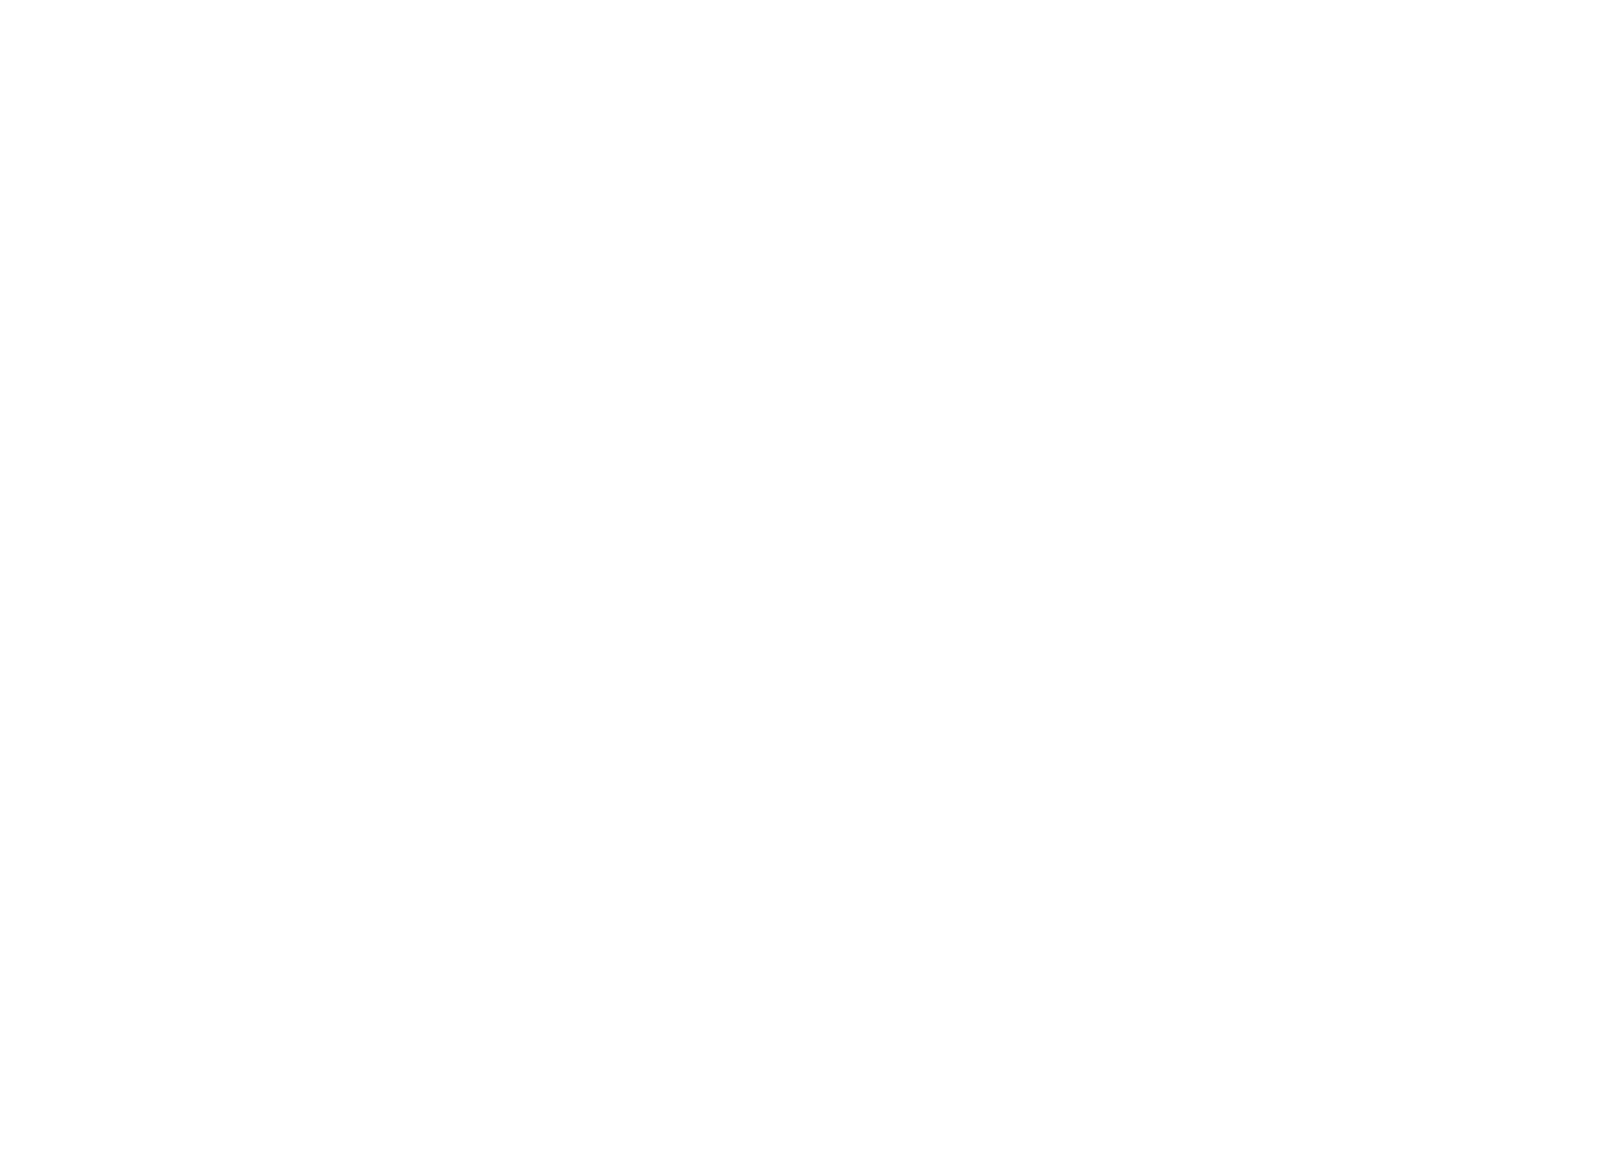 cleanair-logo_globe-left-wordmark-no-R-white